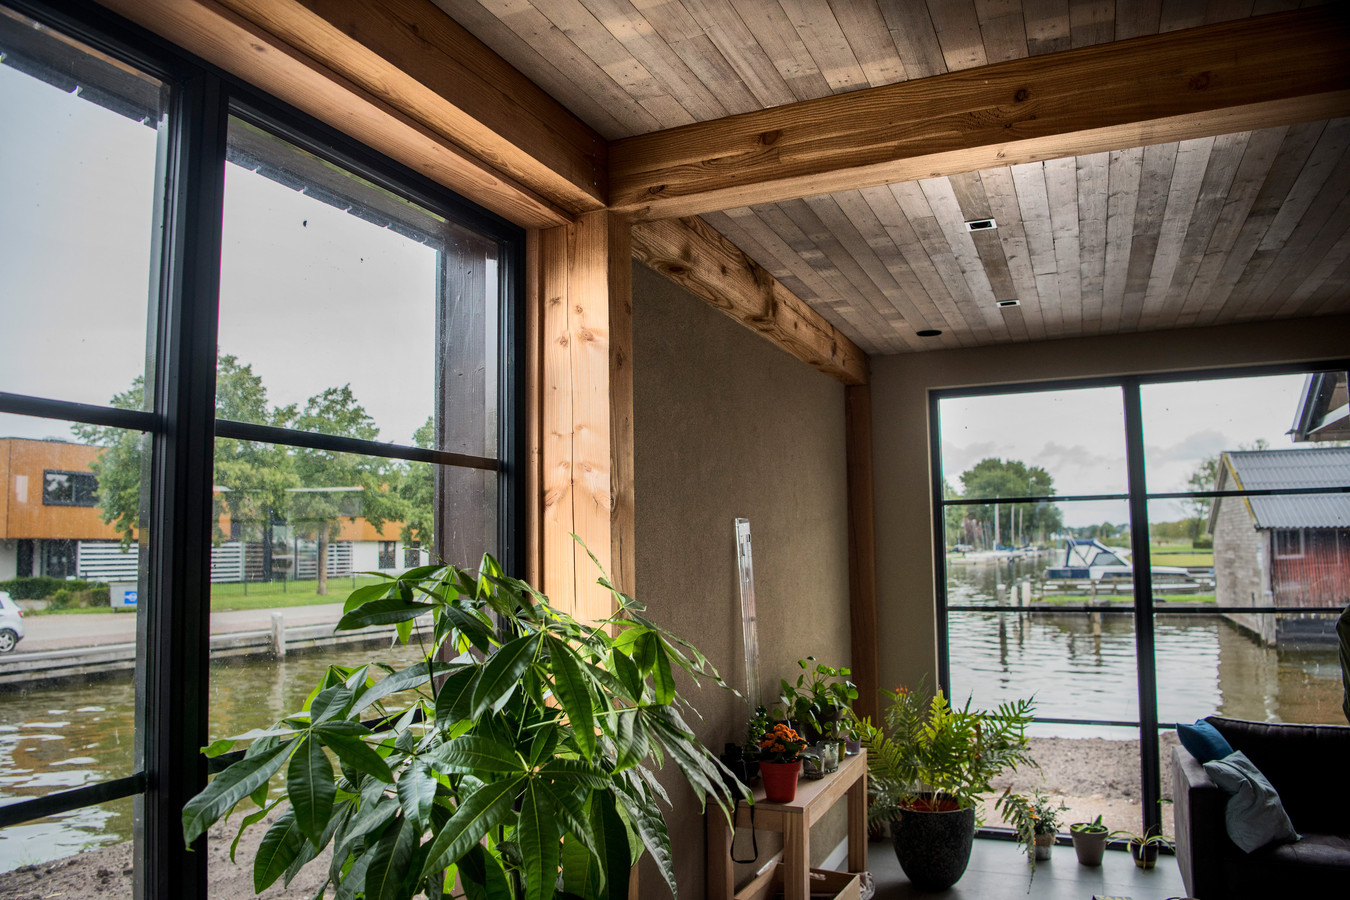 Het huis van Gerrit Hiemstra bestaat uit voornamelijk hout en kalkhennep, duurzame materialen met weinig impact op milieu en klimaat.